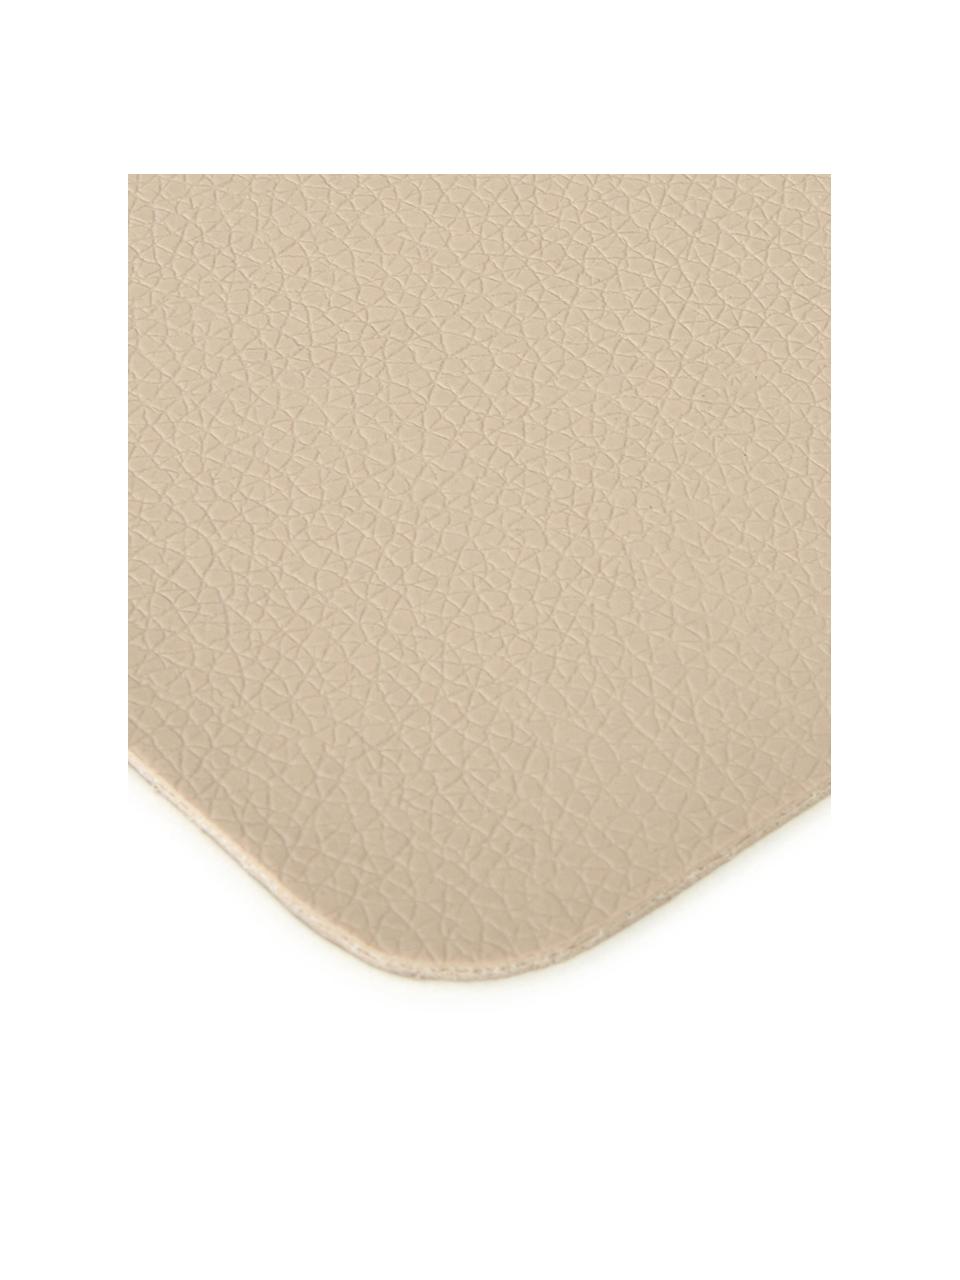 Vierkante kunstleren onderzetters Pik in beige, 4 stuks, Kunstleer (PVC), Beige, B 10 x L 10 cm